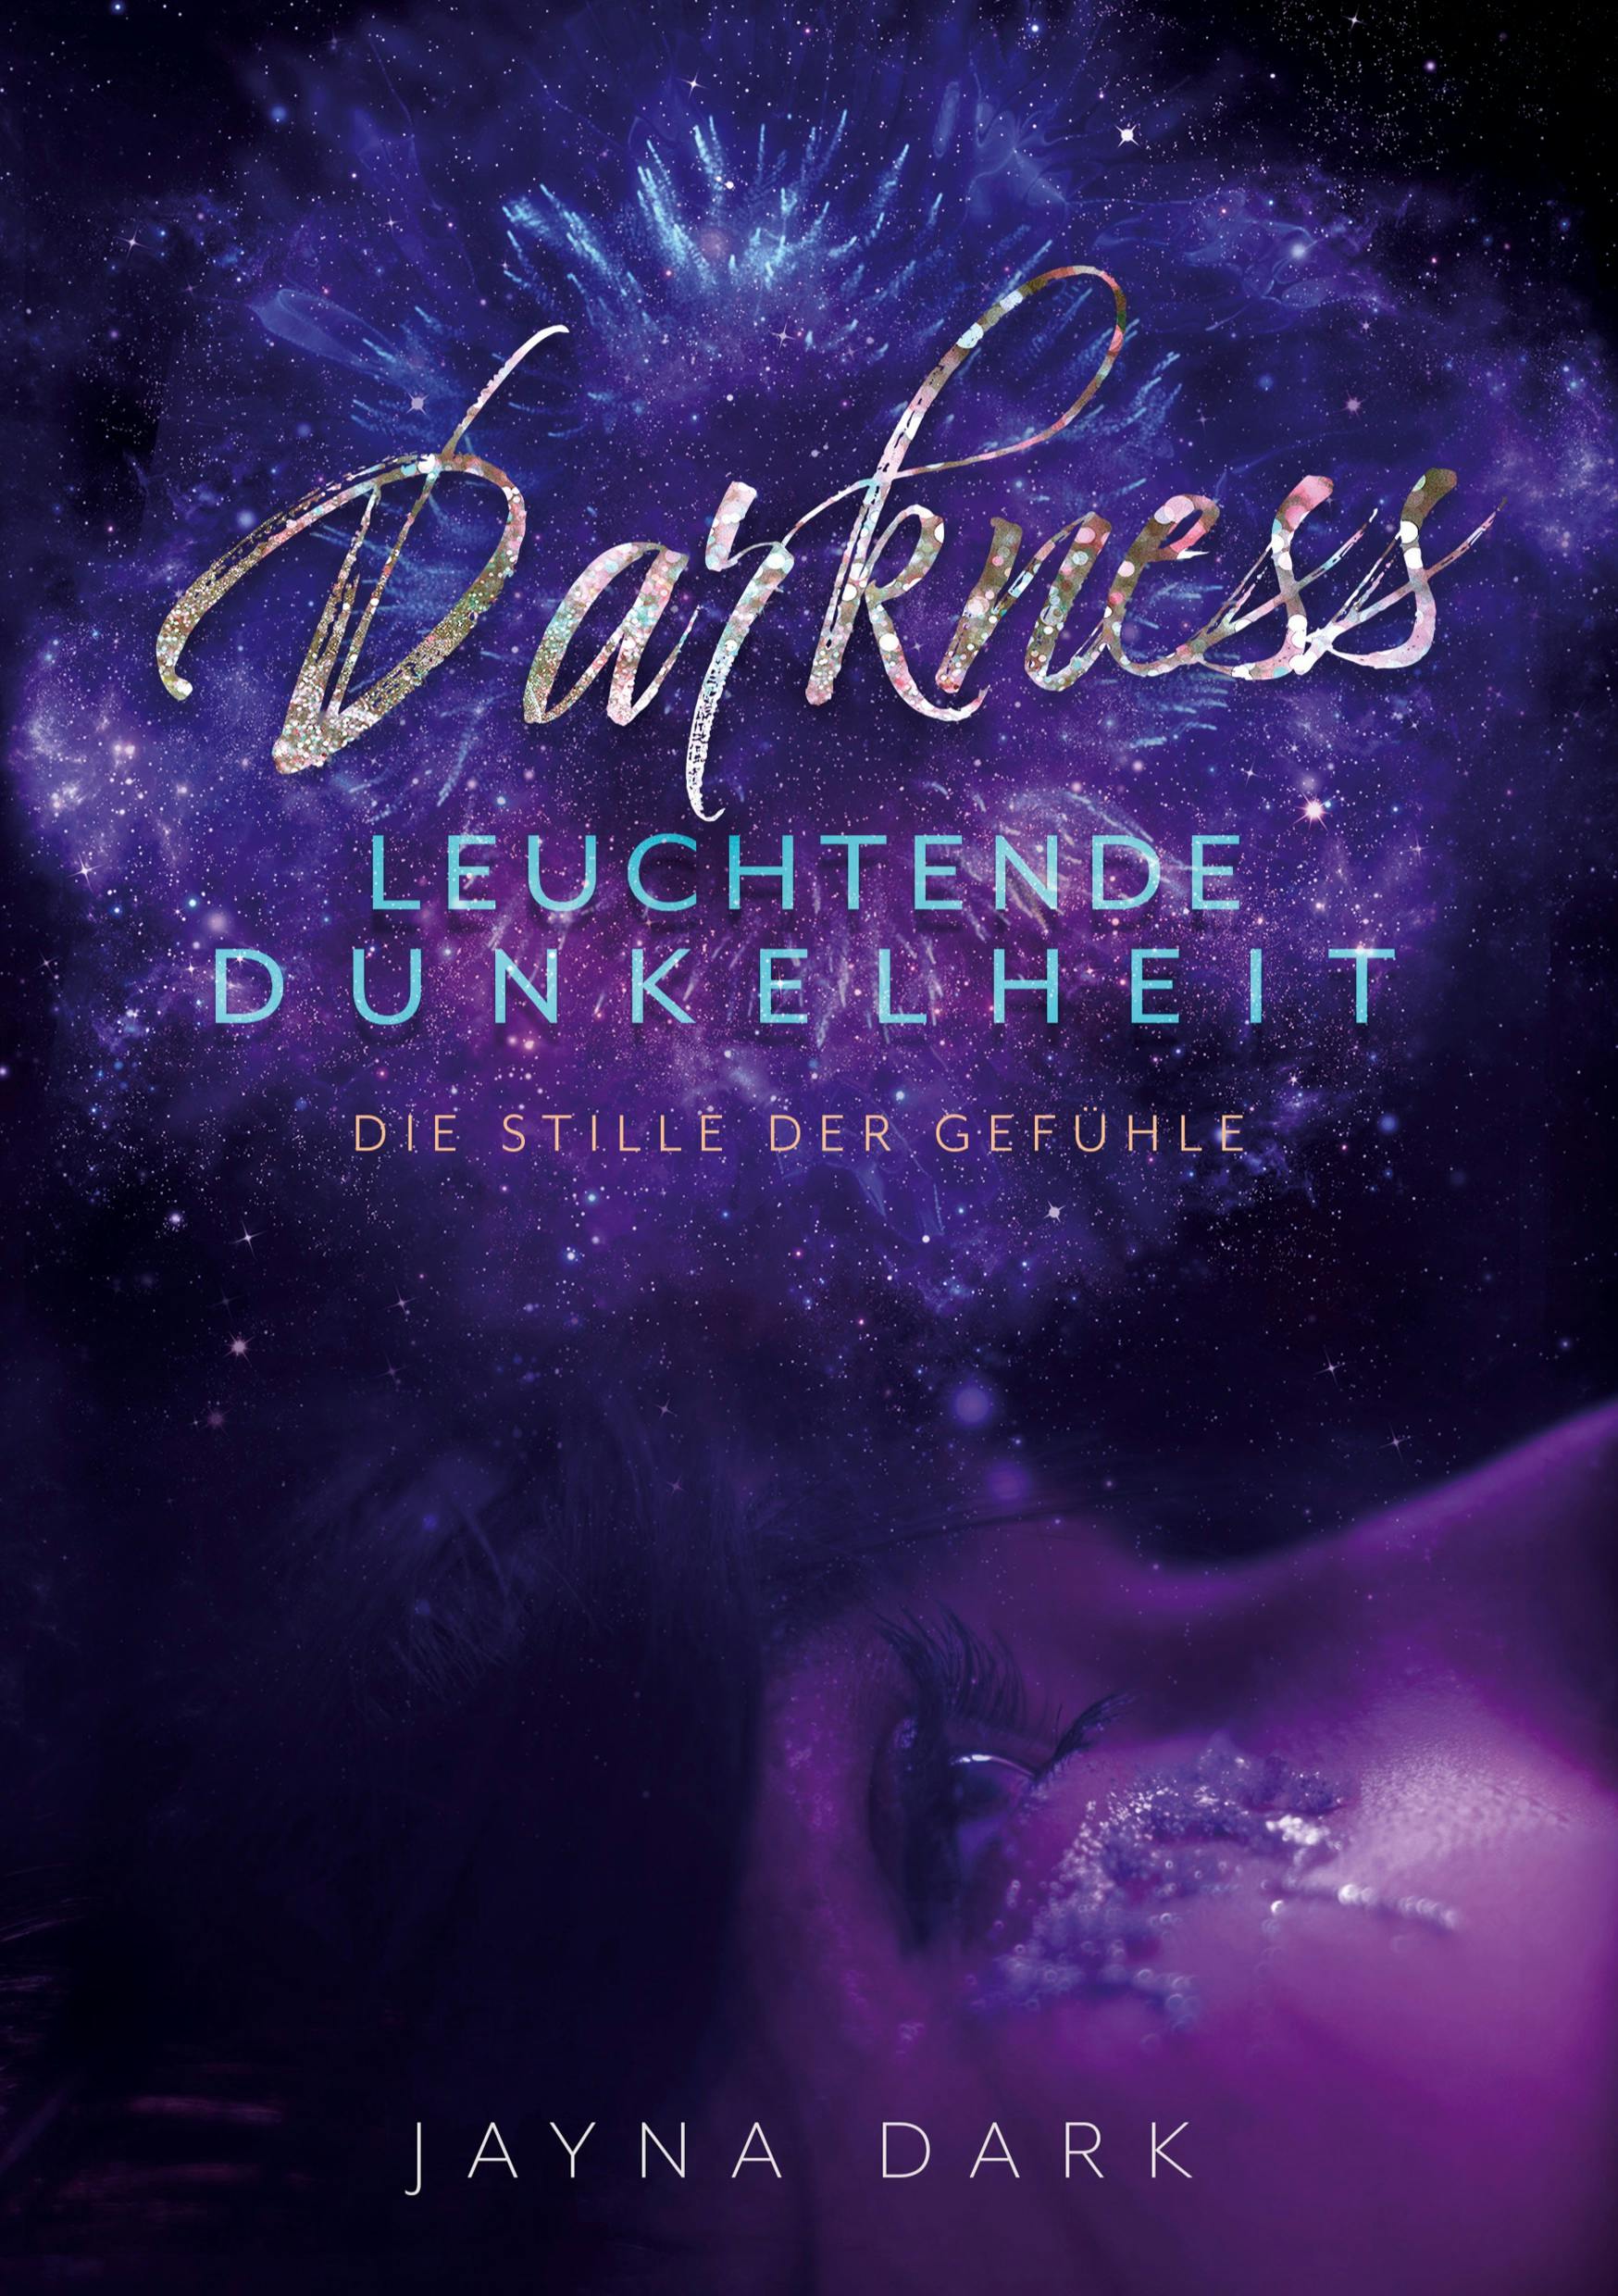 Darkness - Leuchtende Dunkelheit - undefined